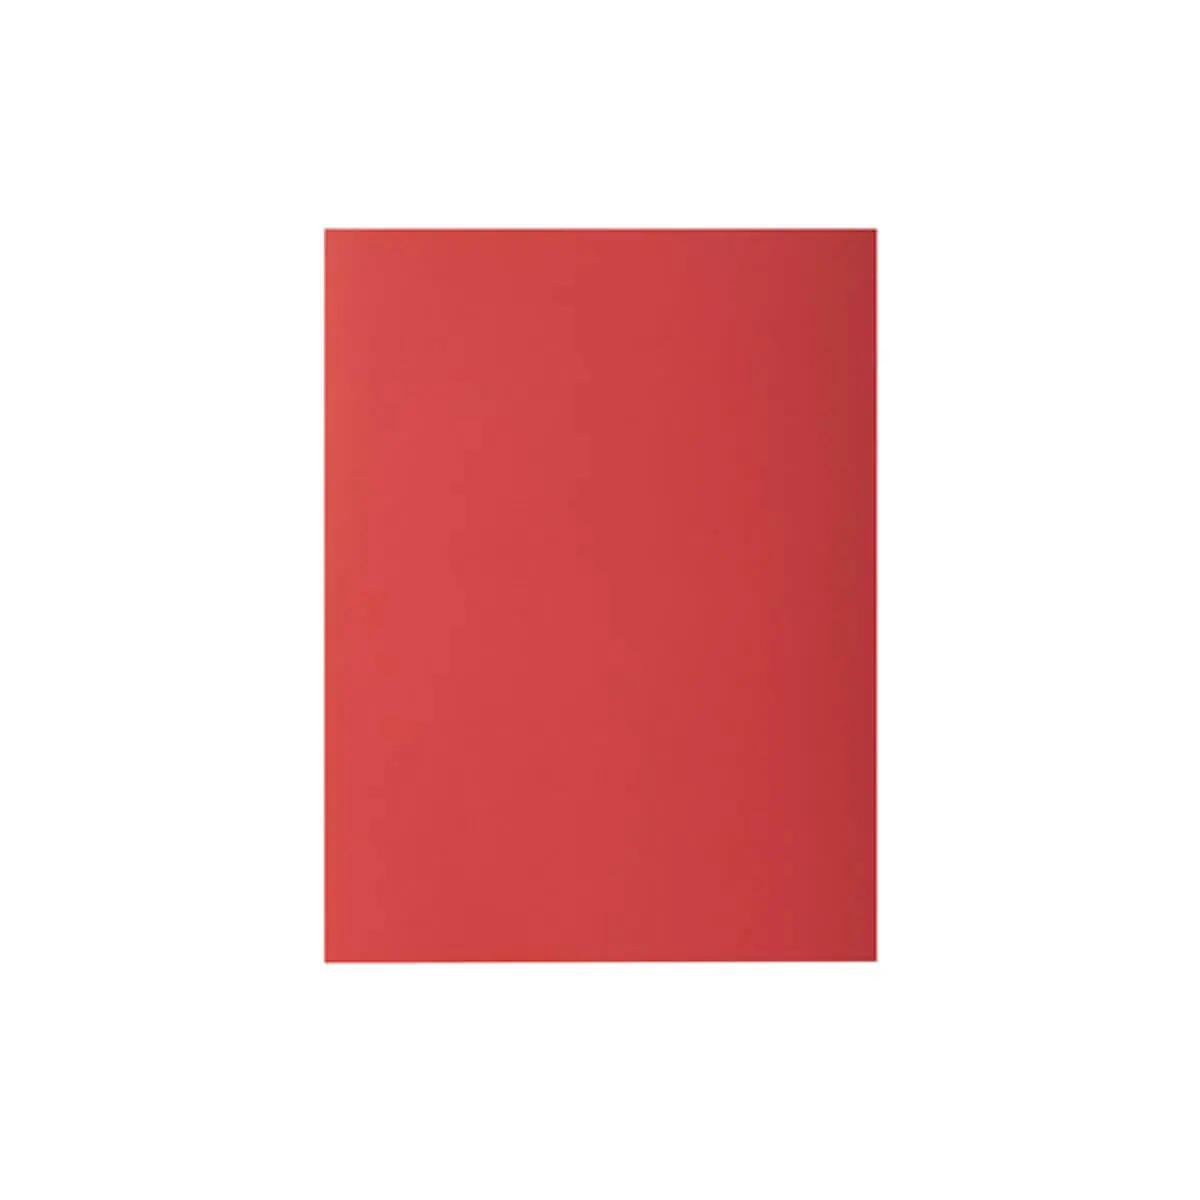 Paquet de 100 chemises ROCK''S 210 - 24x32cm - Rouge - EXACOMPTA photo du produit